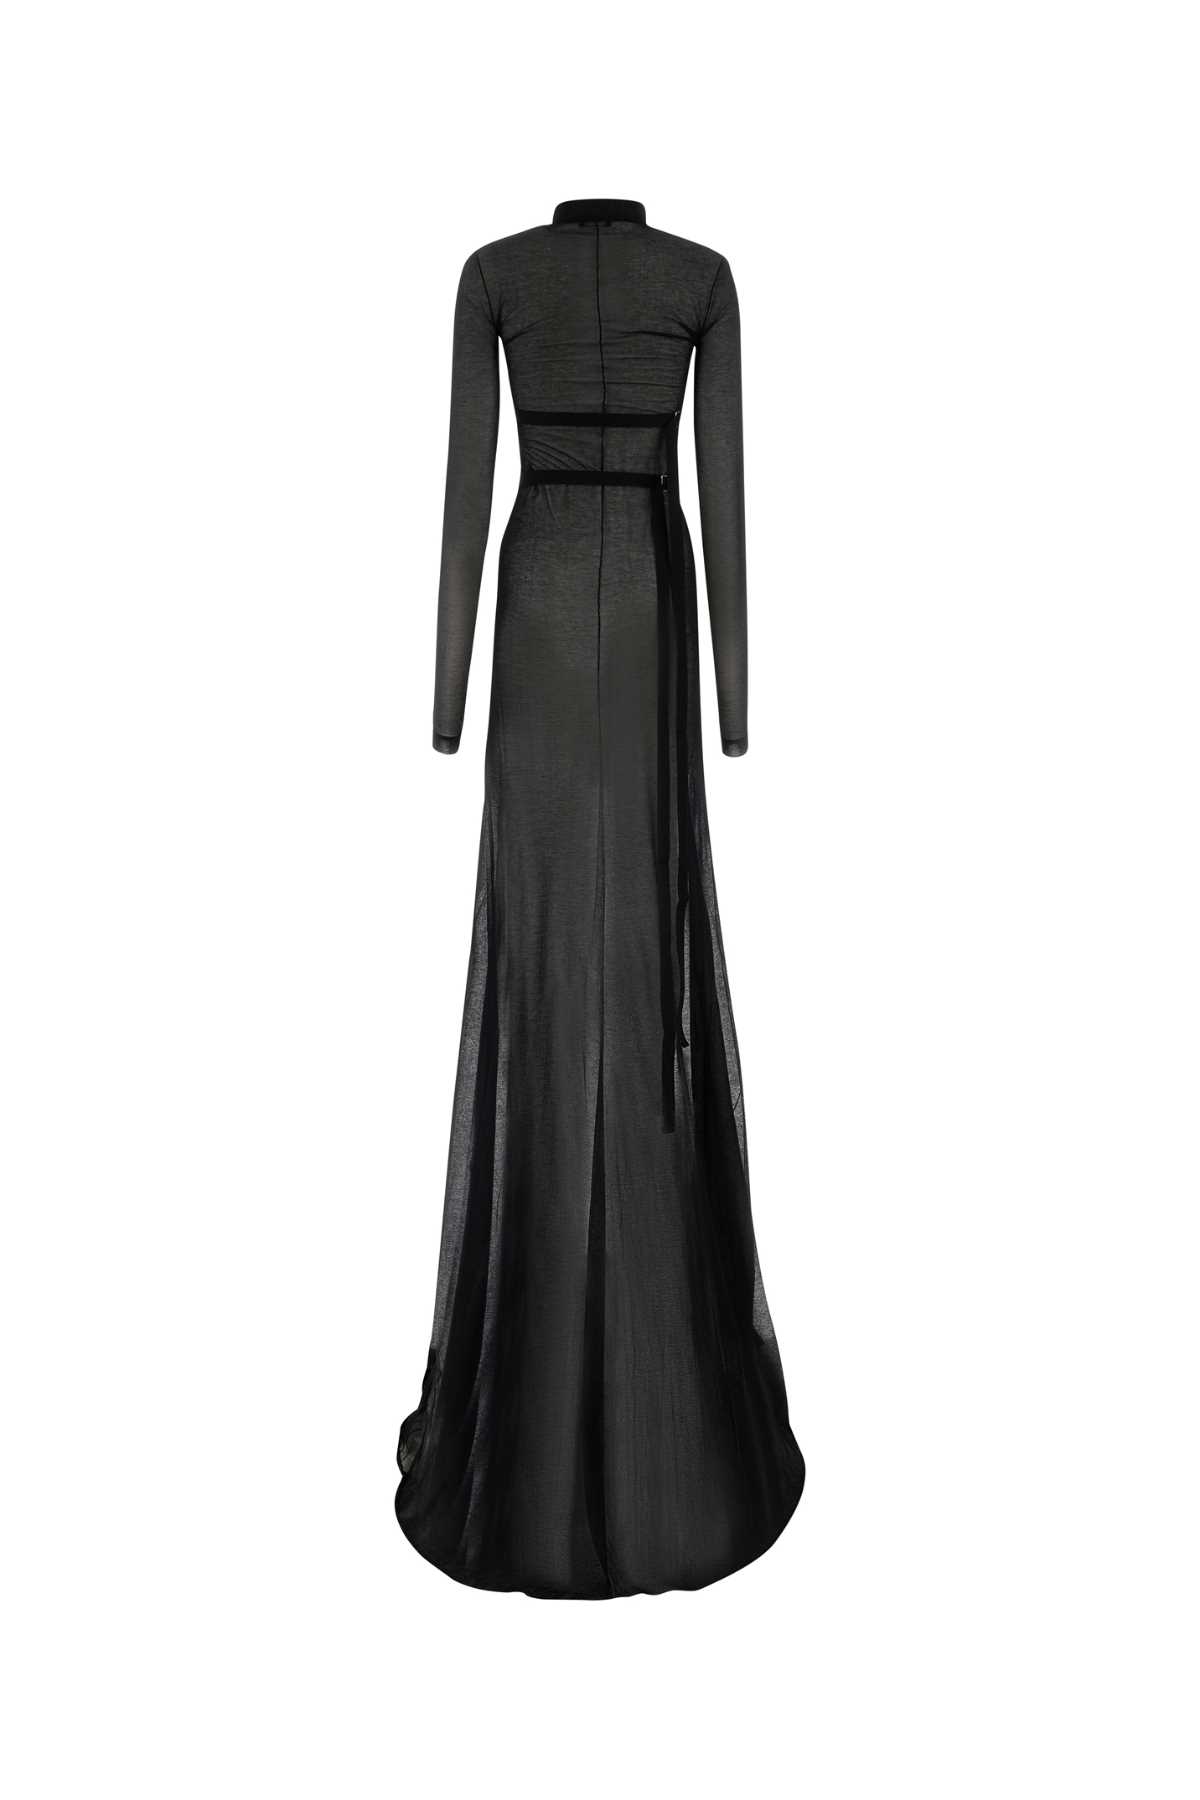 Ann Demeulemeester Black Cotton Blend Long Dress In 099